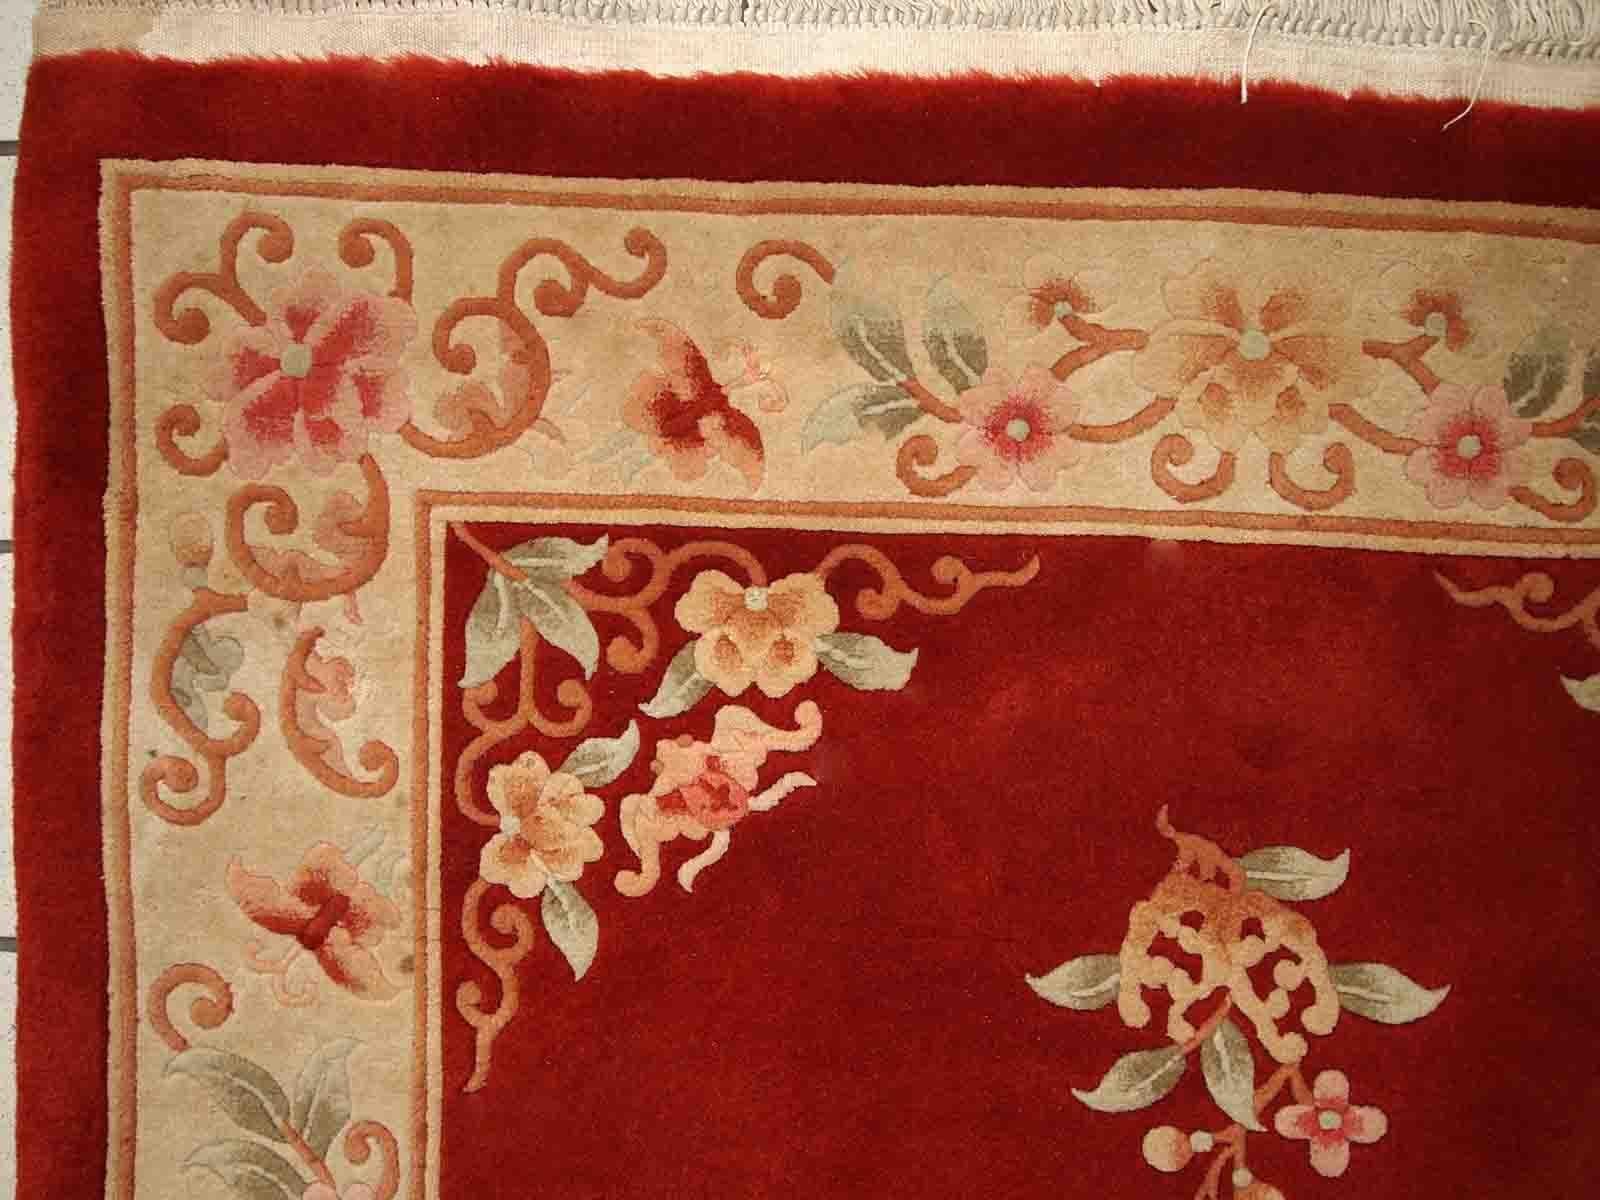 Handgefertigte Vintage Art Deco Chinese Teppich in leuchtend orange Farbe. Der Teppich ist aus dem Ende des 20. Jahrhunderts im Originalzustand, er hat einige Altersspuren.

-Zustand: originell, einige Altersspuren, 

-etwa: 1970er